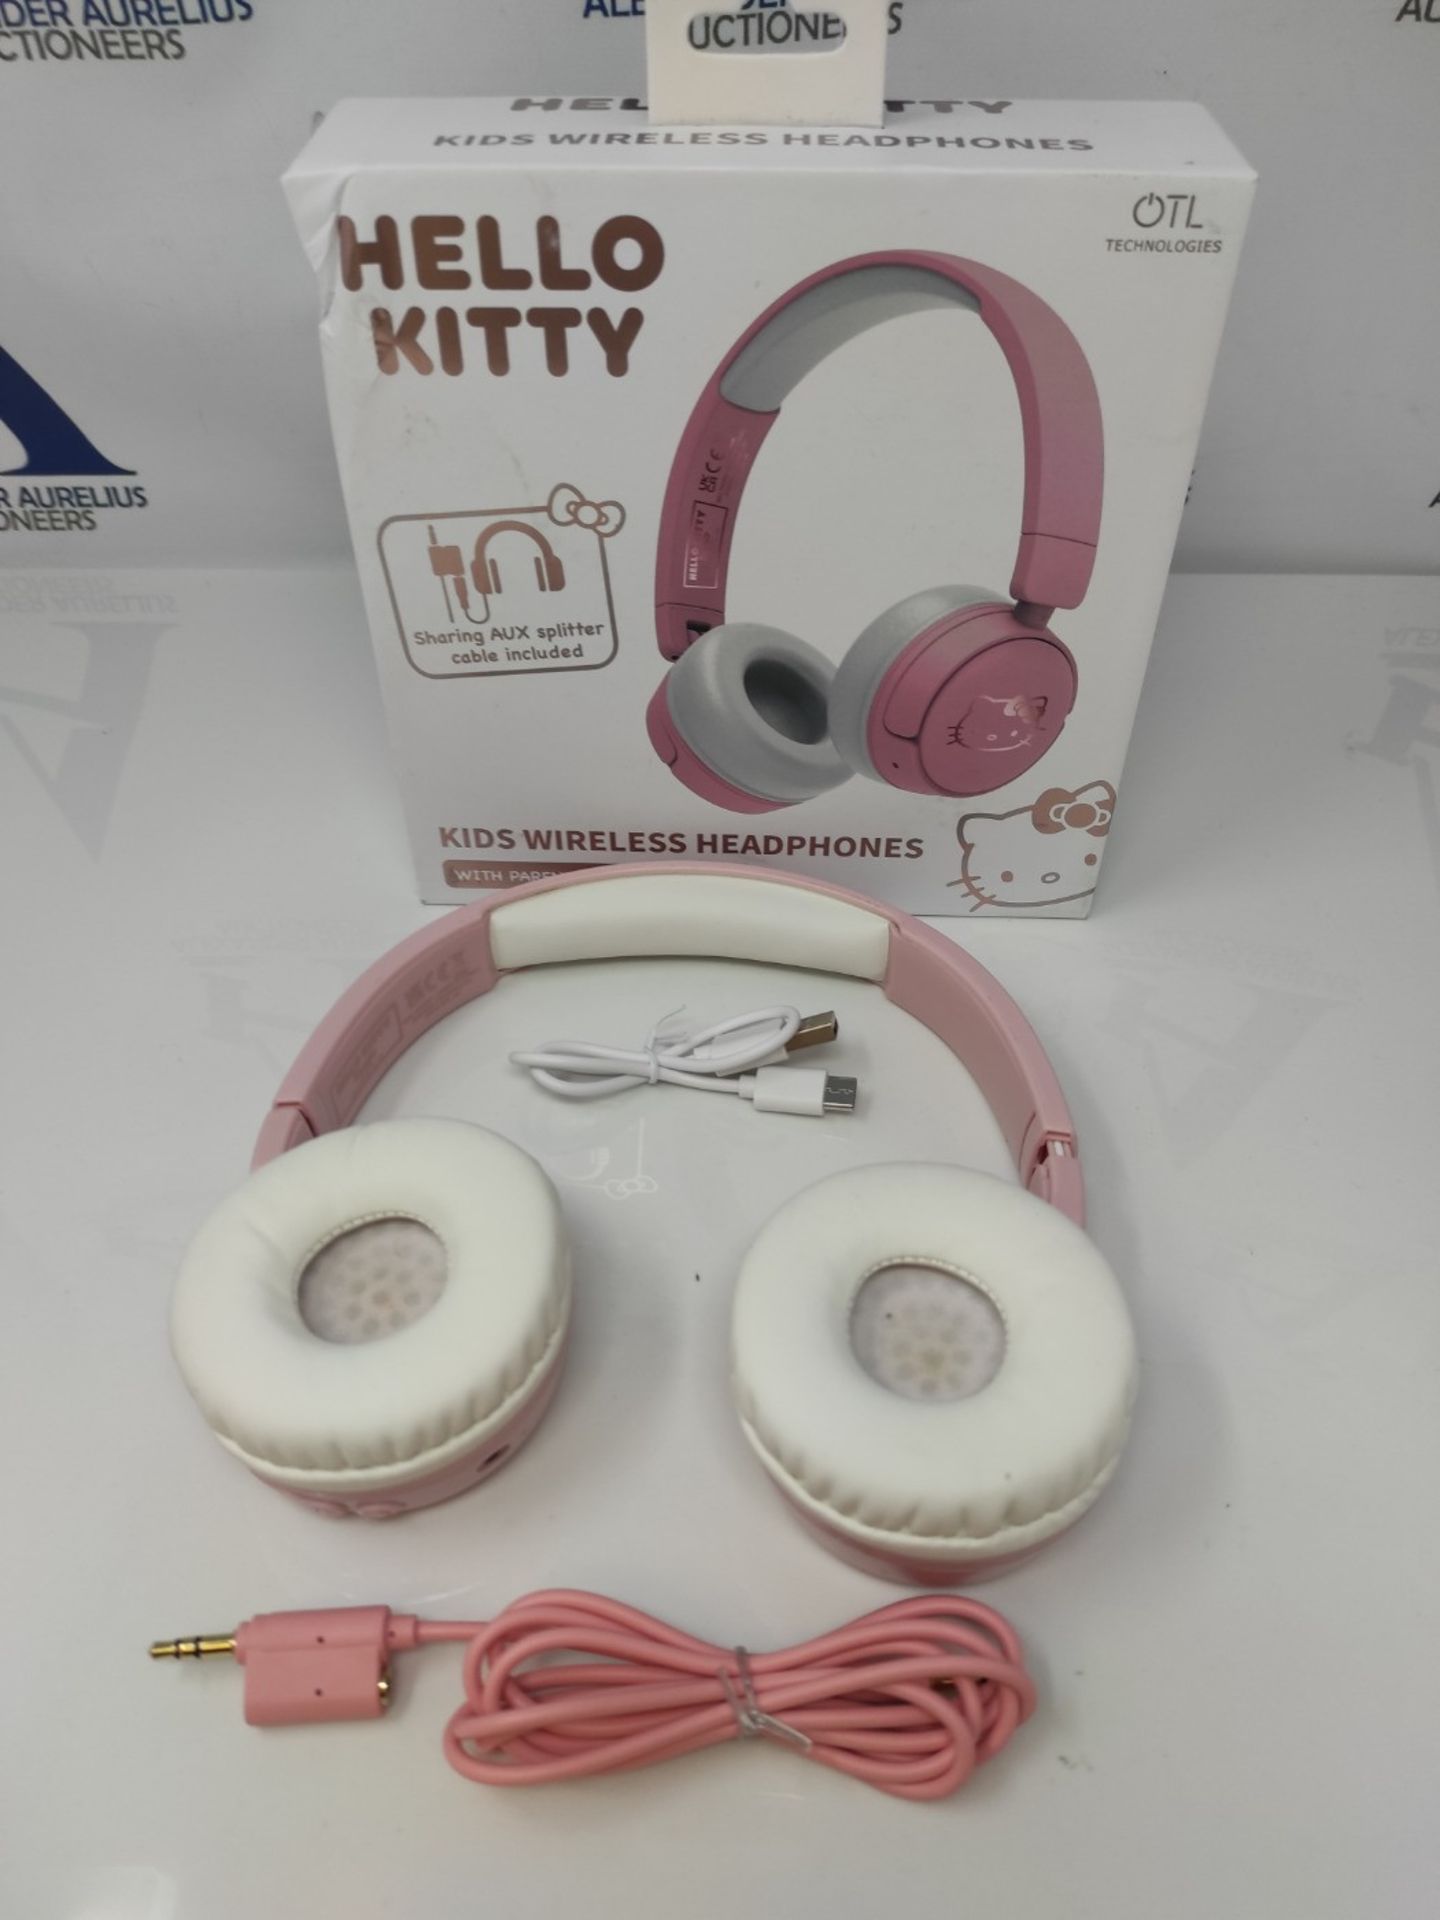 OTL Technologies HK0991 Hello Kitty Kids Wireless Headphones - Pink - Image 3 of 3